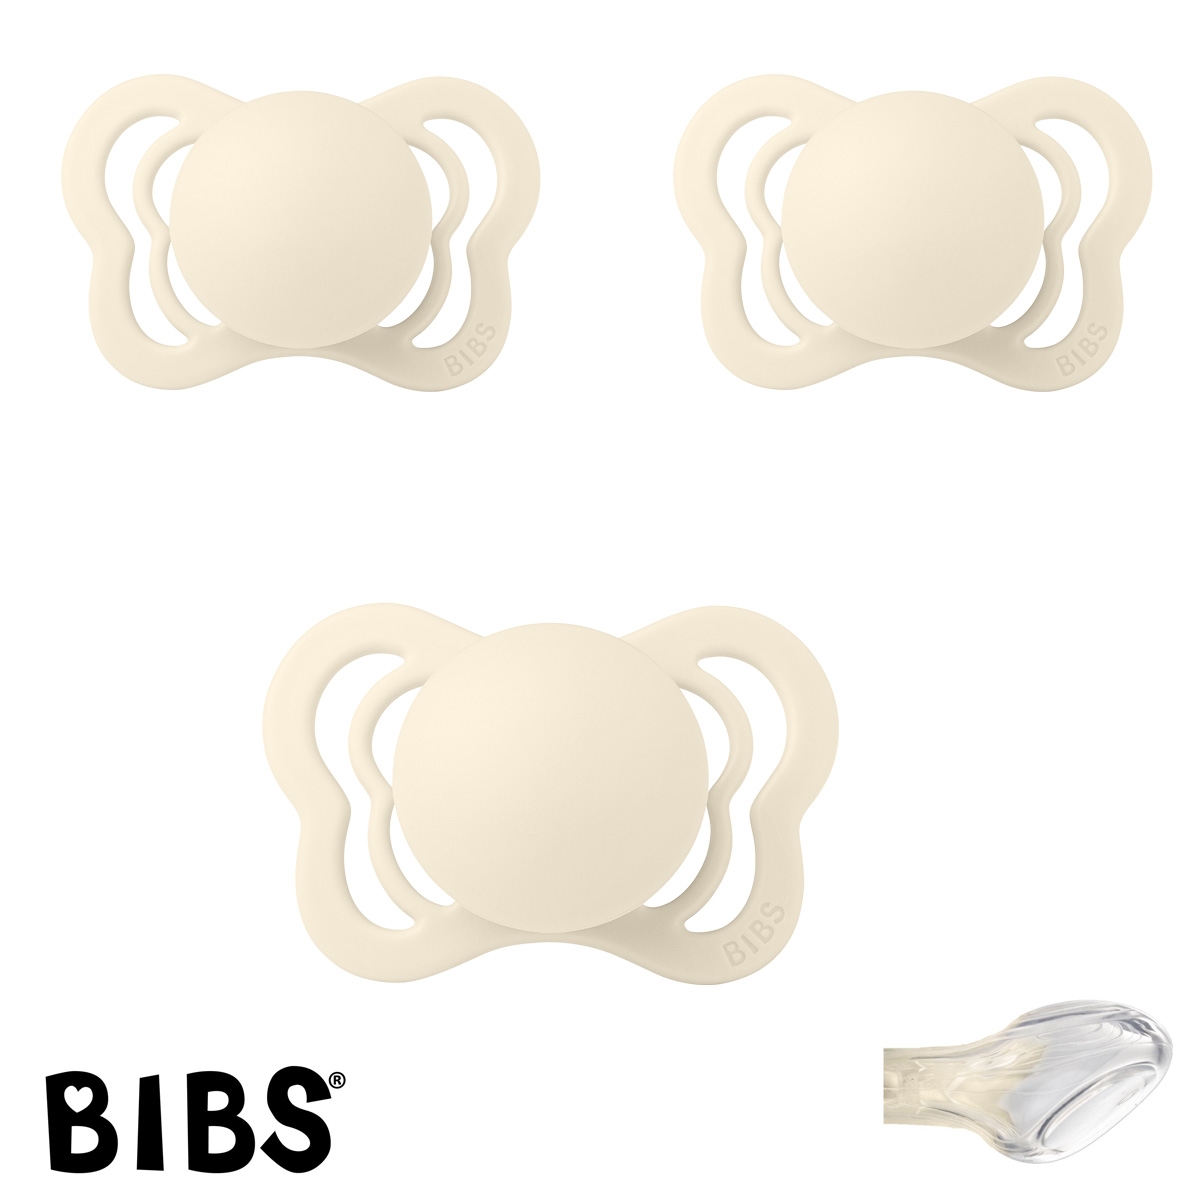 BIBS Couture Sutter med navn str1, Ivory, Anatomisk Silikone, Pakke med 3 sutter